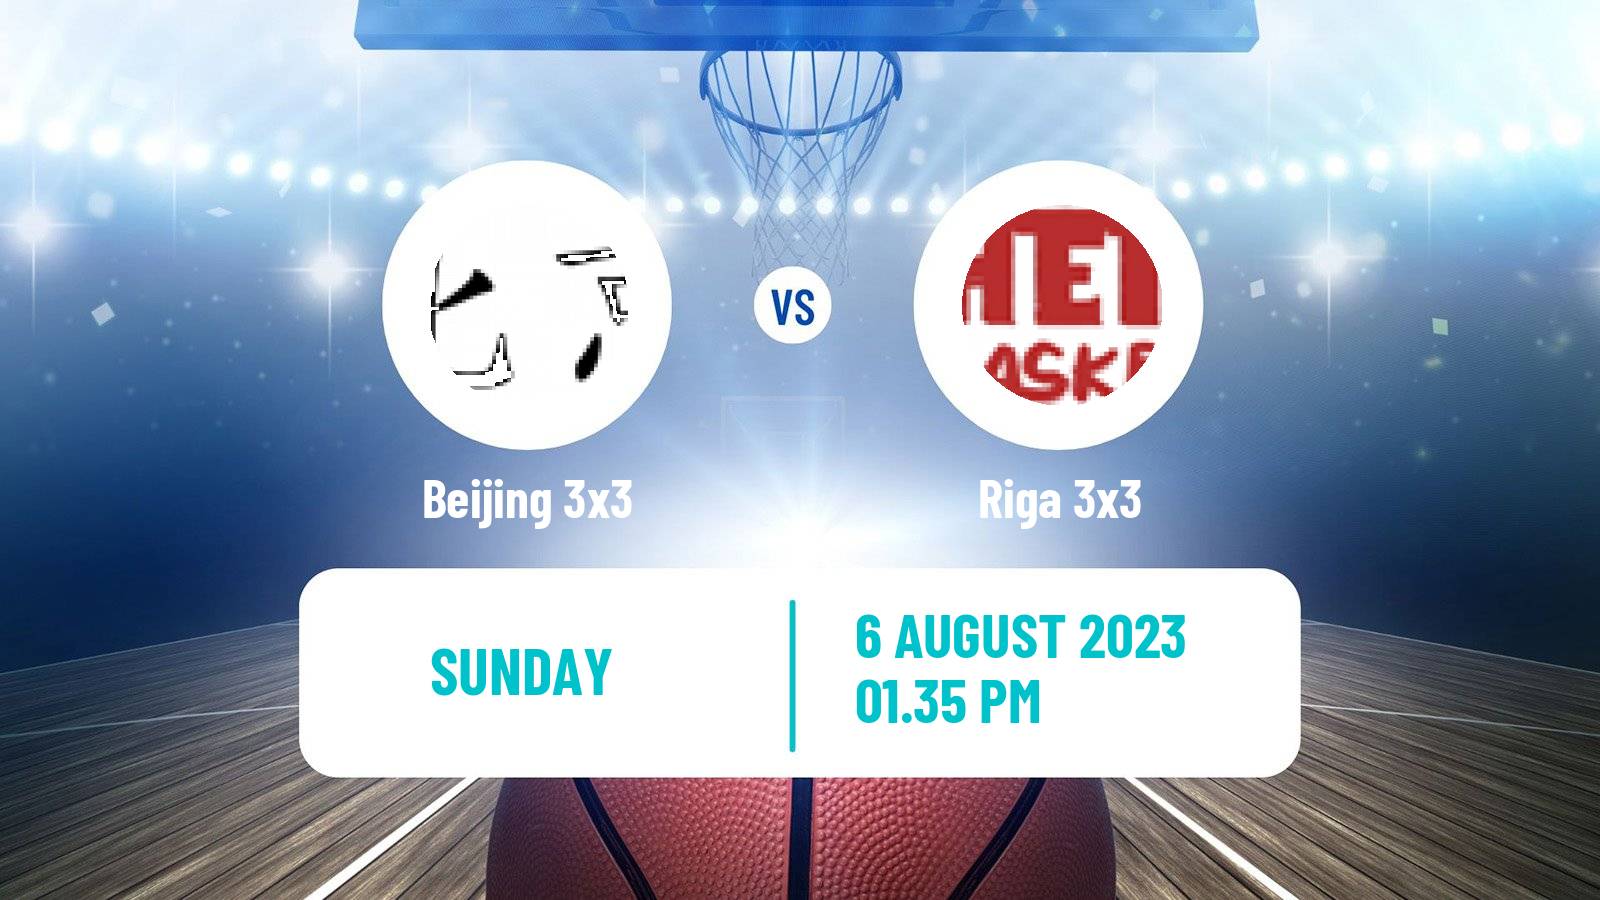 Basketball World Tour Prague 3x3 Beijing 3x3 - Riga 3x3